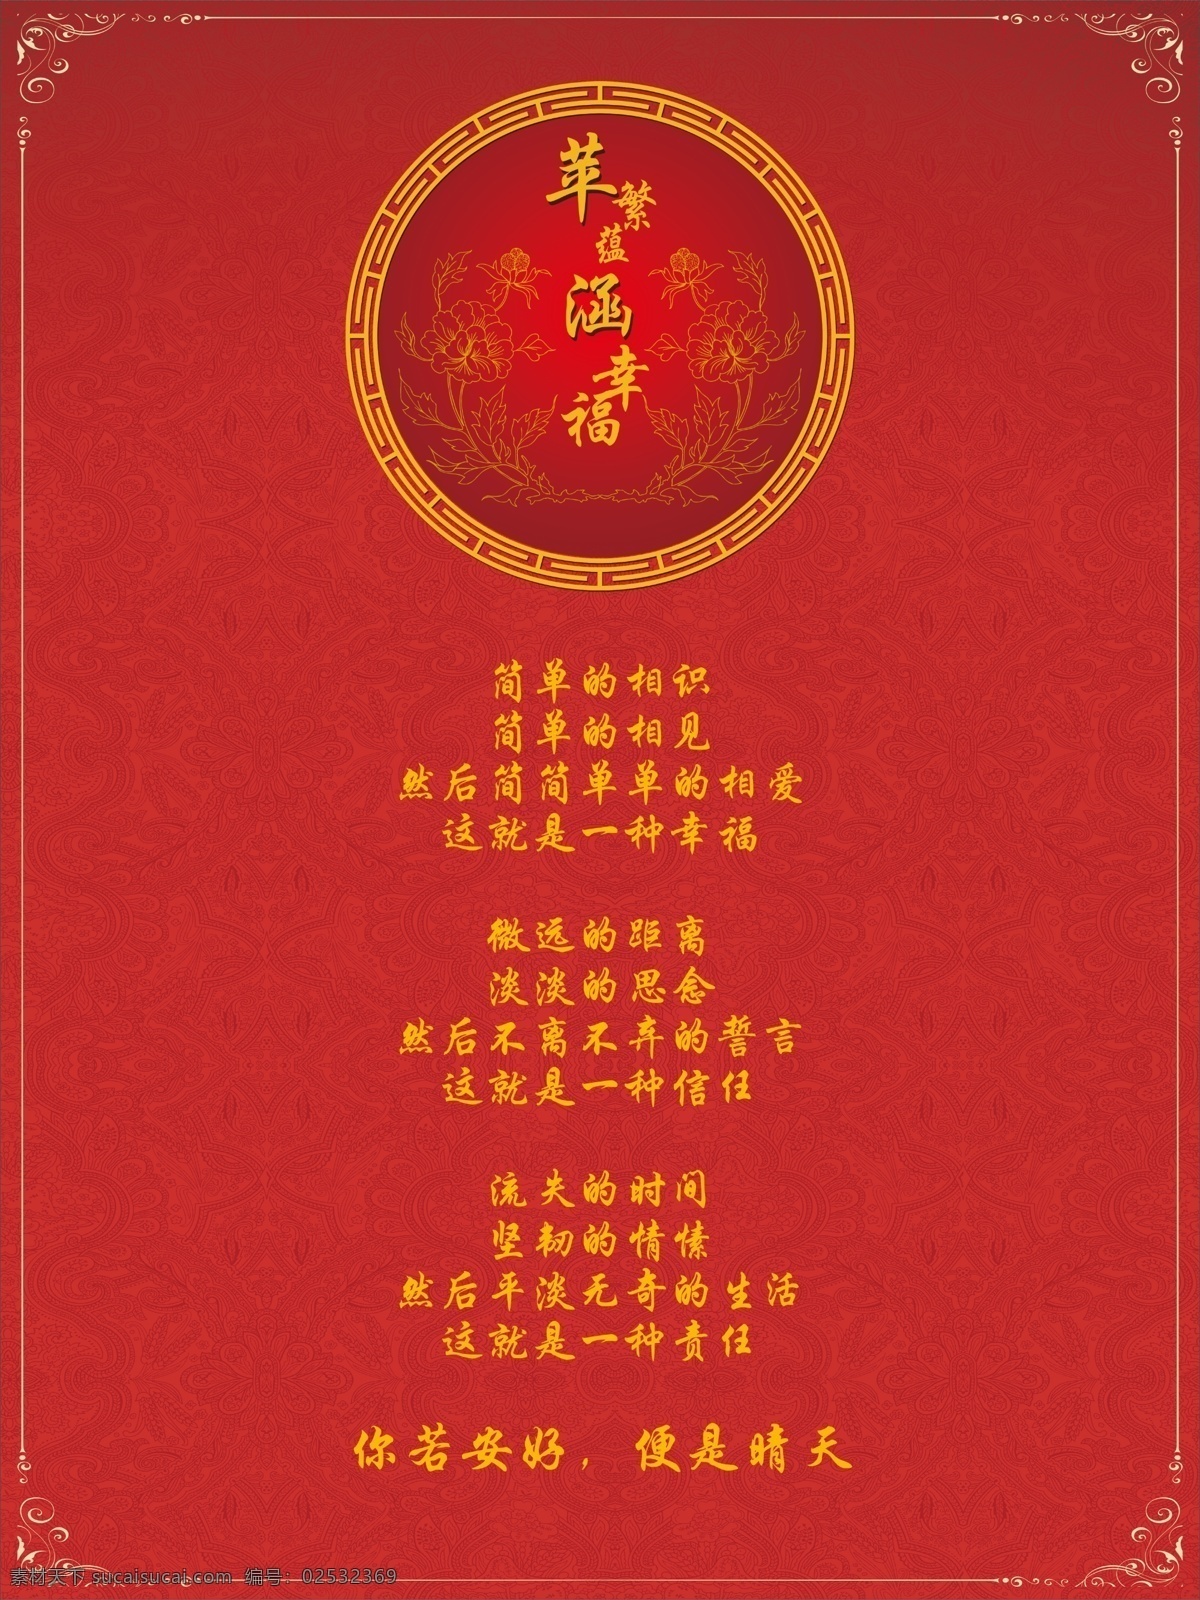 红色 中式 指示牌 苹繁蕴涵幸福 红色指示牌 金色花纹底纹 金色边框圆环 婚庆中式 婚庆策划 婚礼指示牌